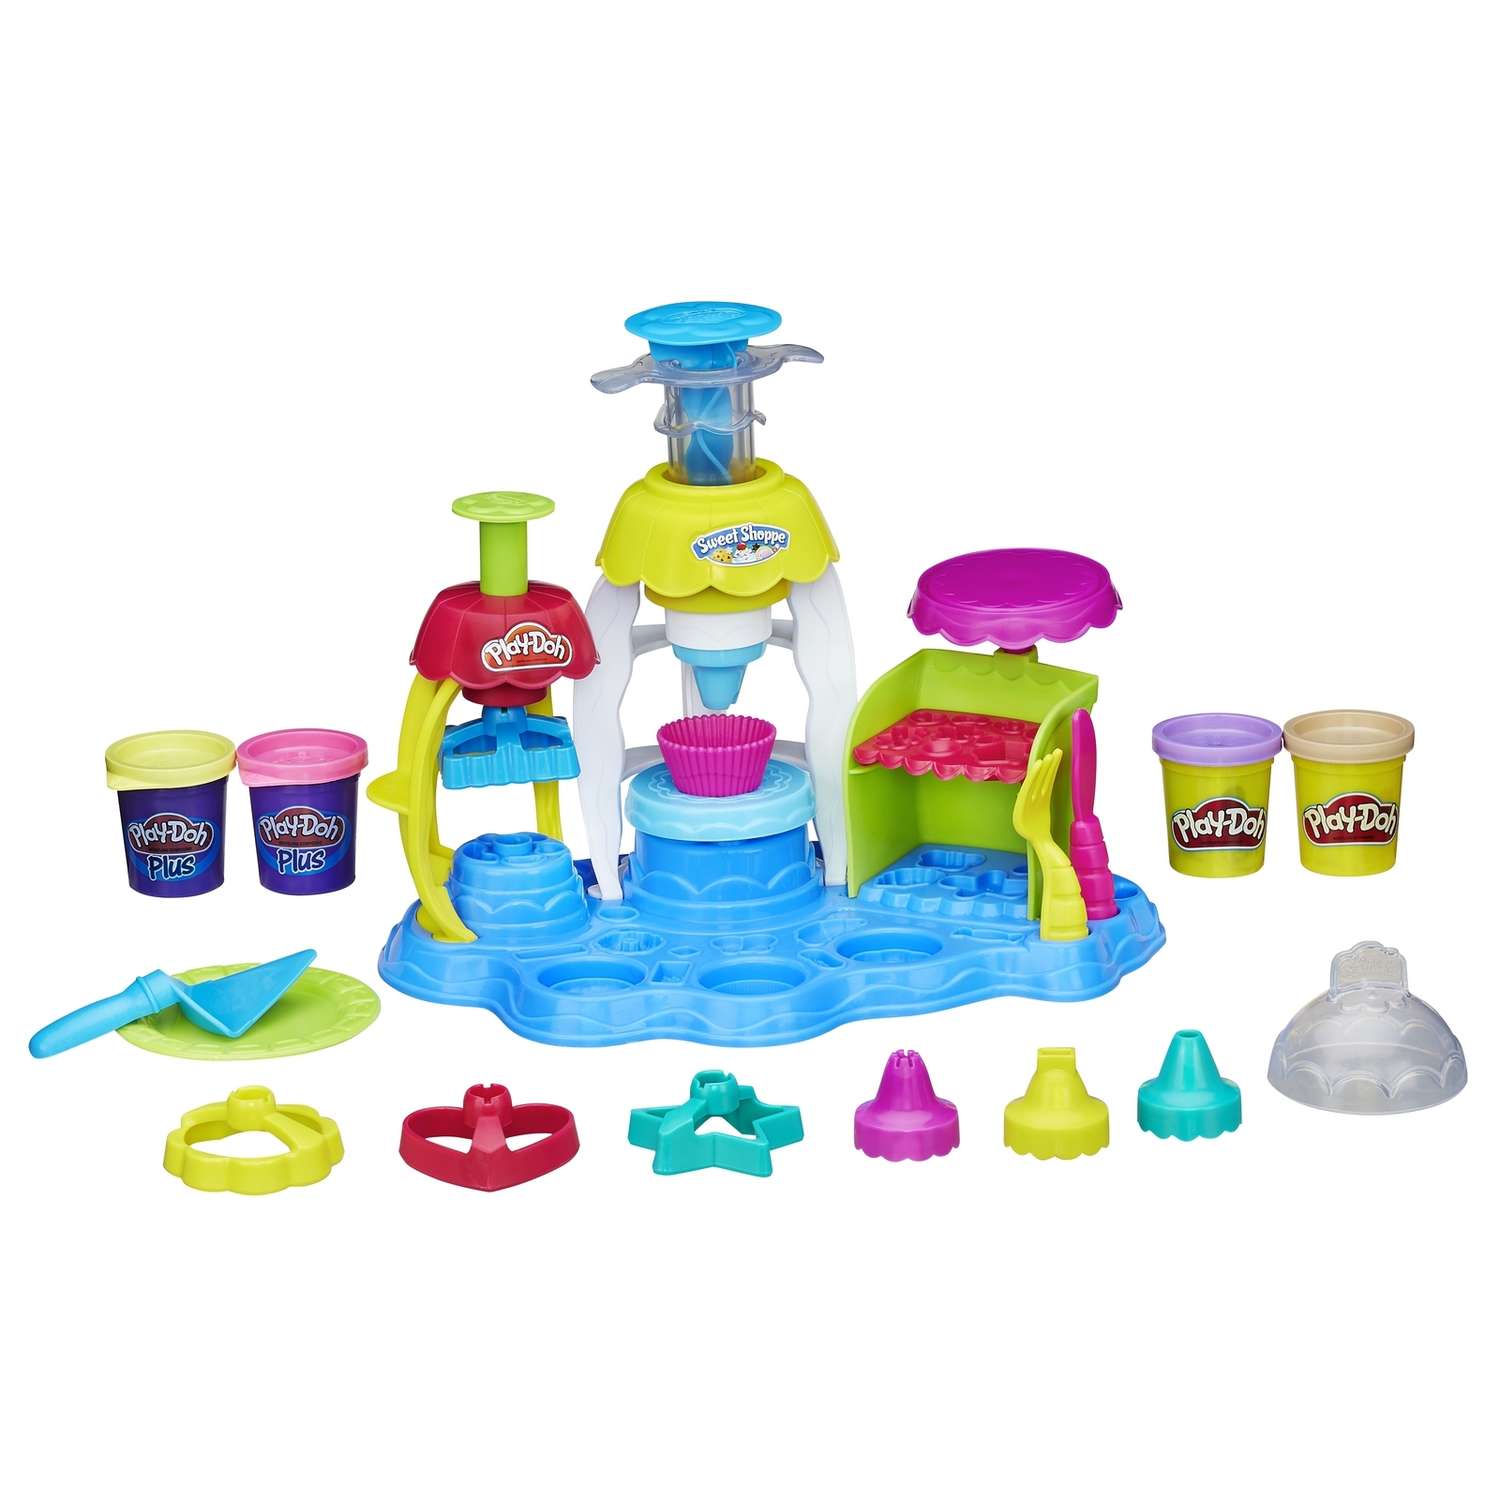 Игровой набор Play-Doh PLUS Фабрика пирожных - фото 2